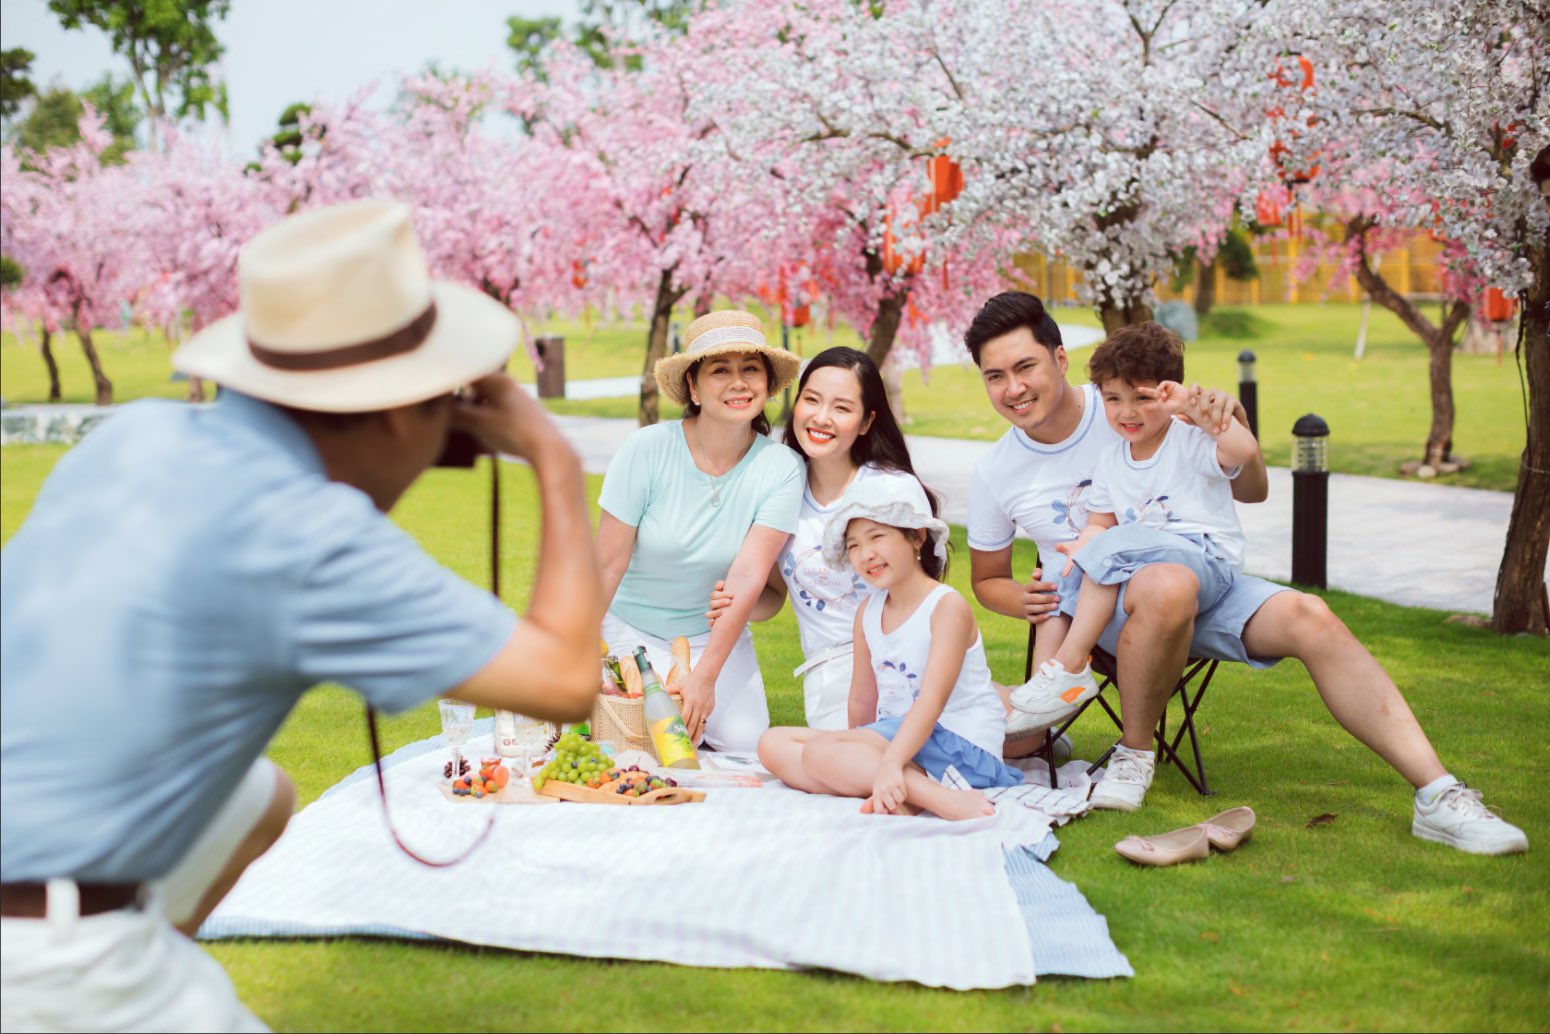 Vườn Nhật Bản Zen Park ấn tượng với quảng trường đèn lồng, cung đường hoa anh đào rực rỡ… Những mảng không gian rực rỡ được phủ bởi “rừng hoa anh đào” khiến các gia đình vô cùng thích thú. 